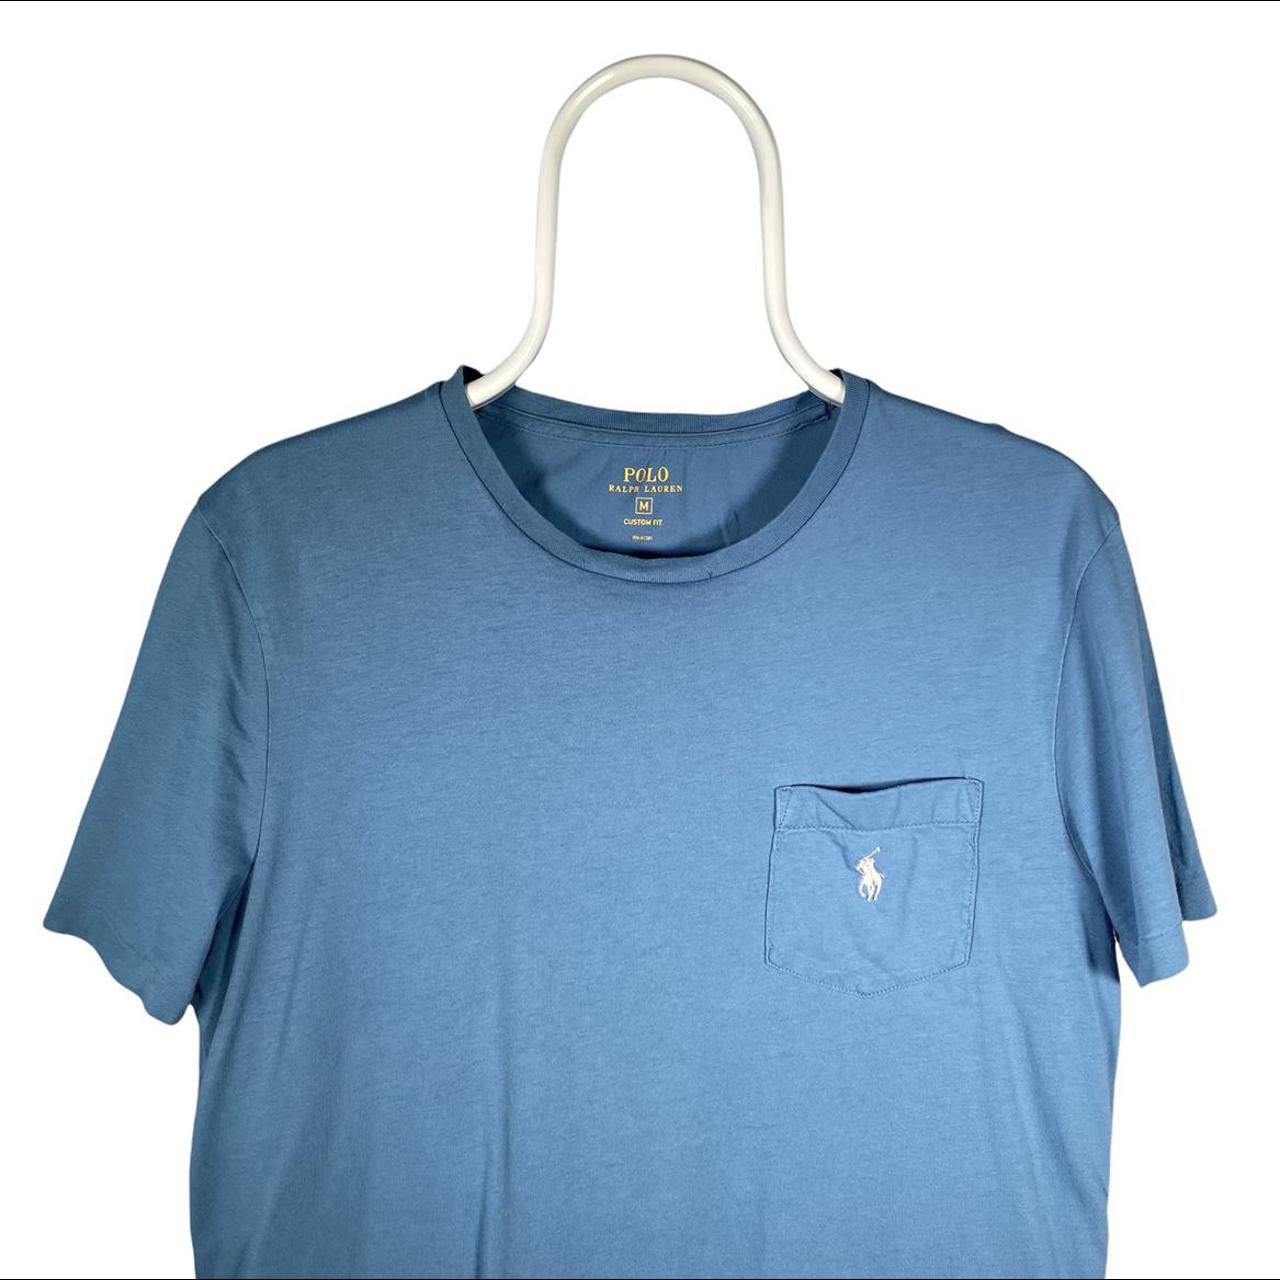 Polo Ralph Lauren Men's Blue T-shirt